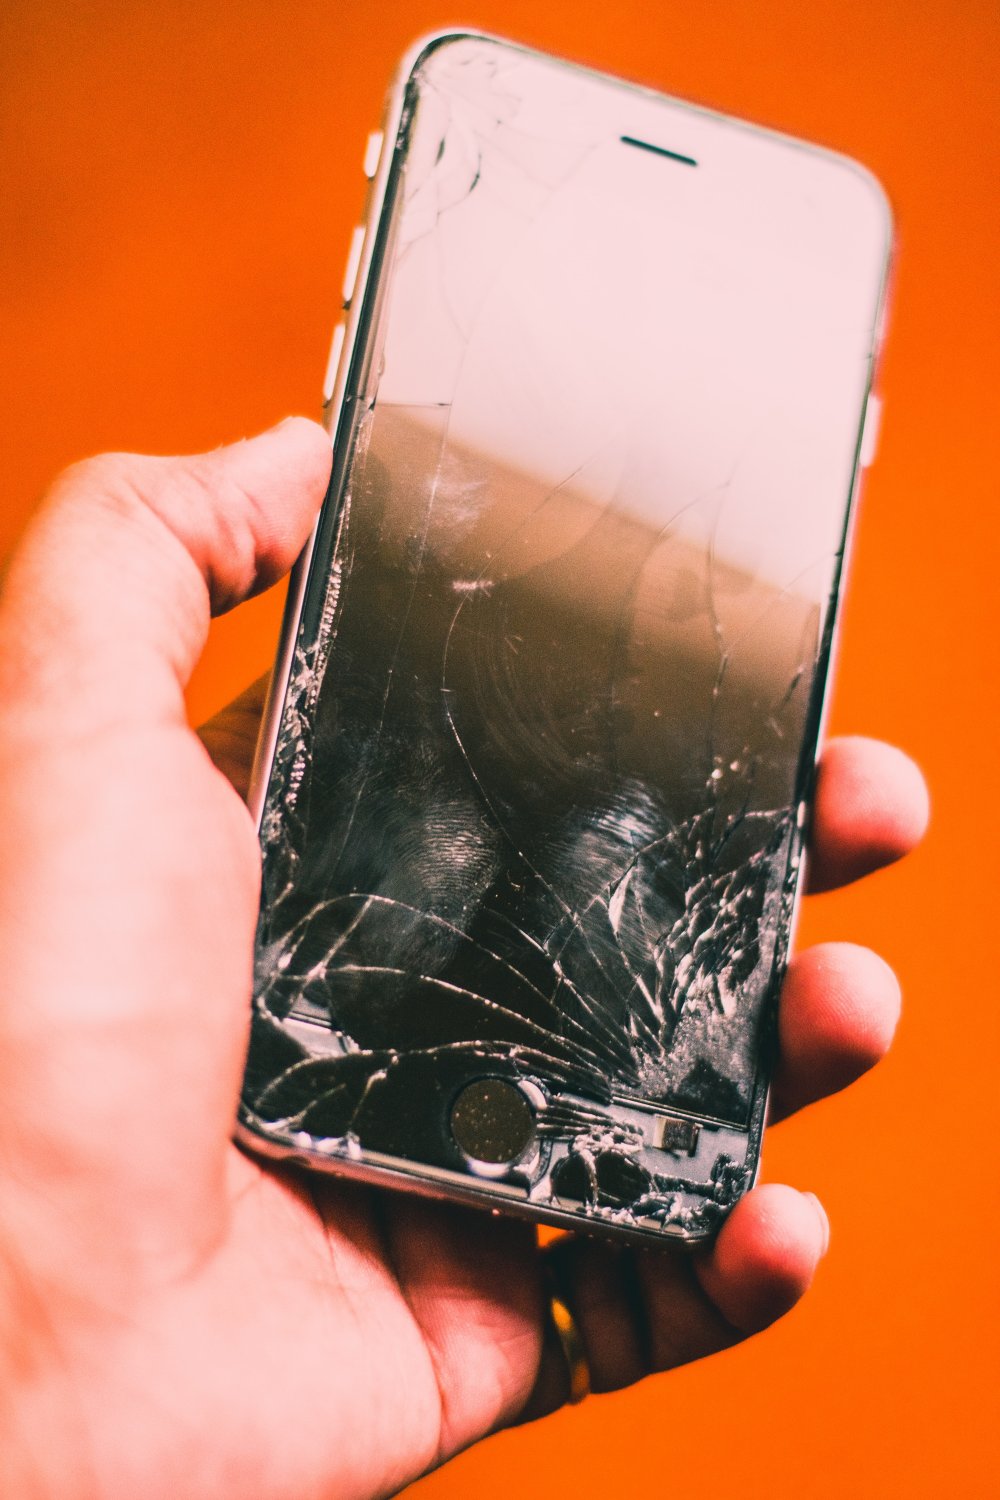 Er dit iPhone cover blevet lidt snusket at røre ved?